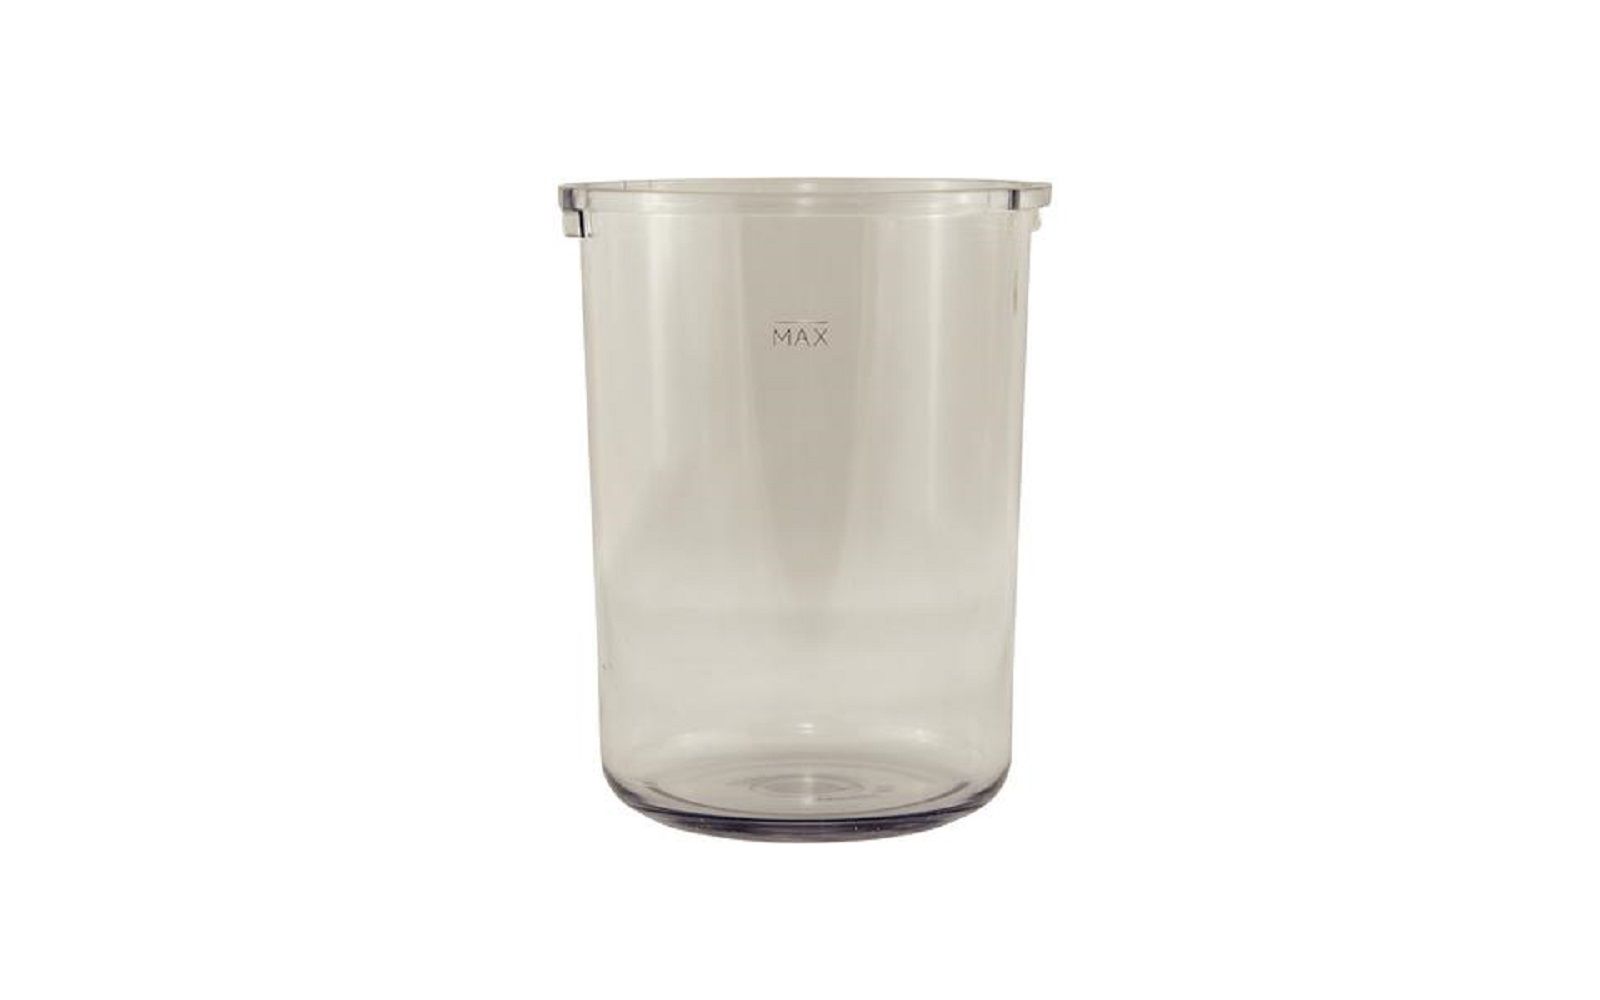 Vac-u-mixer replacement plastic bowls 875 ml